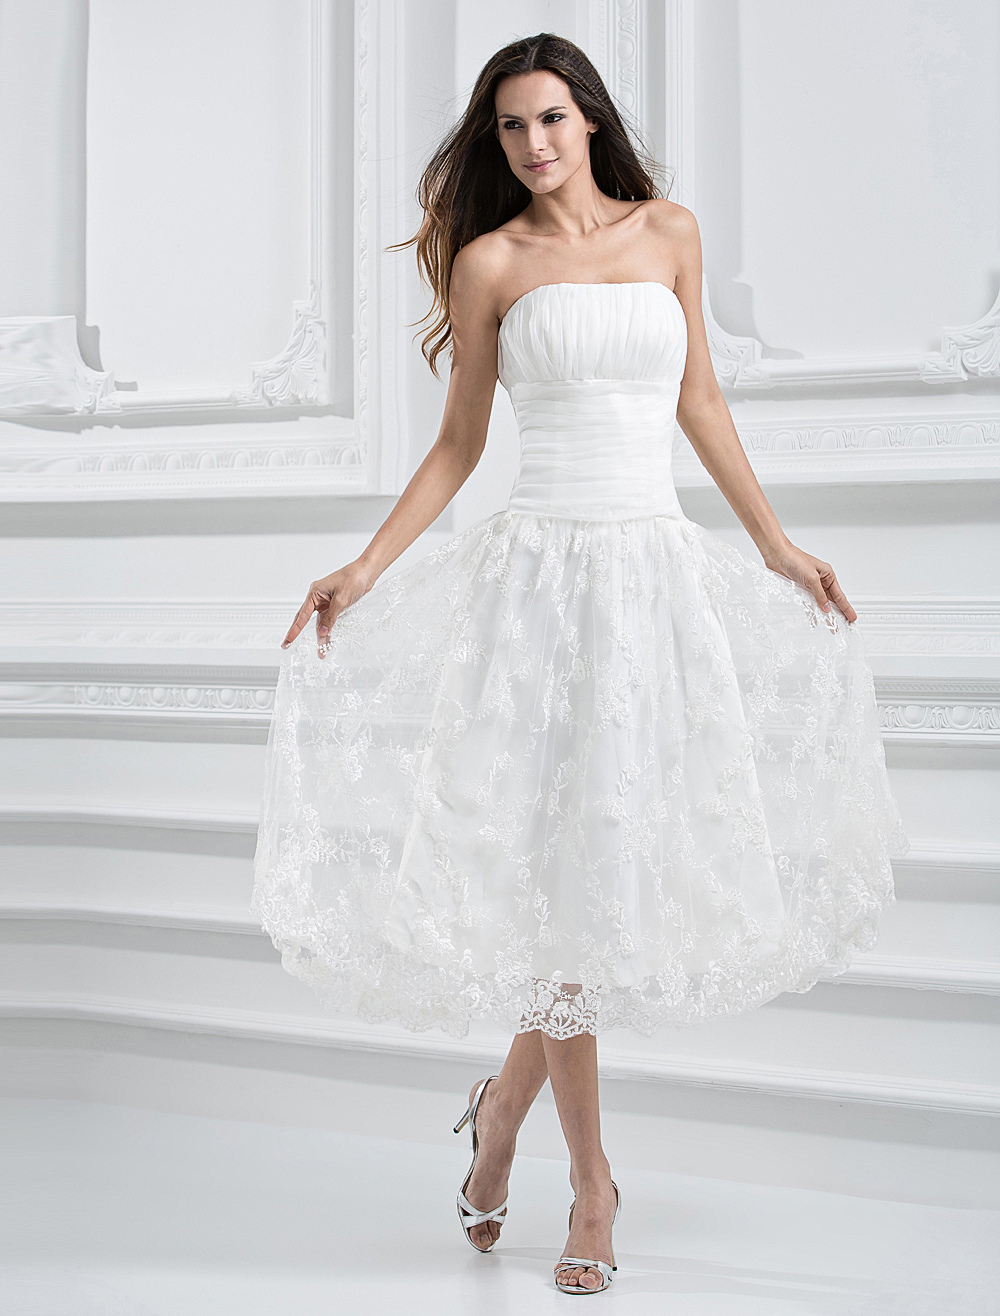 Ivory Brocade Organza Strapless Tea Length Wedding Dress - Milanoo.com